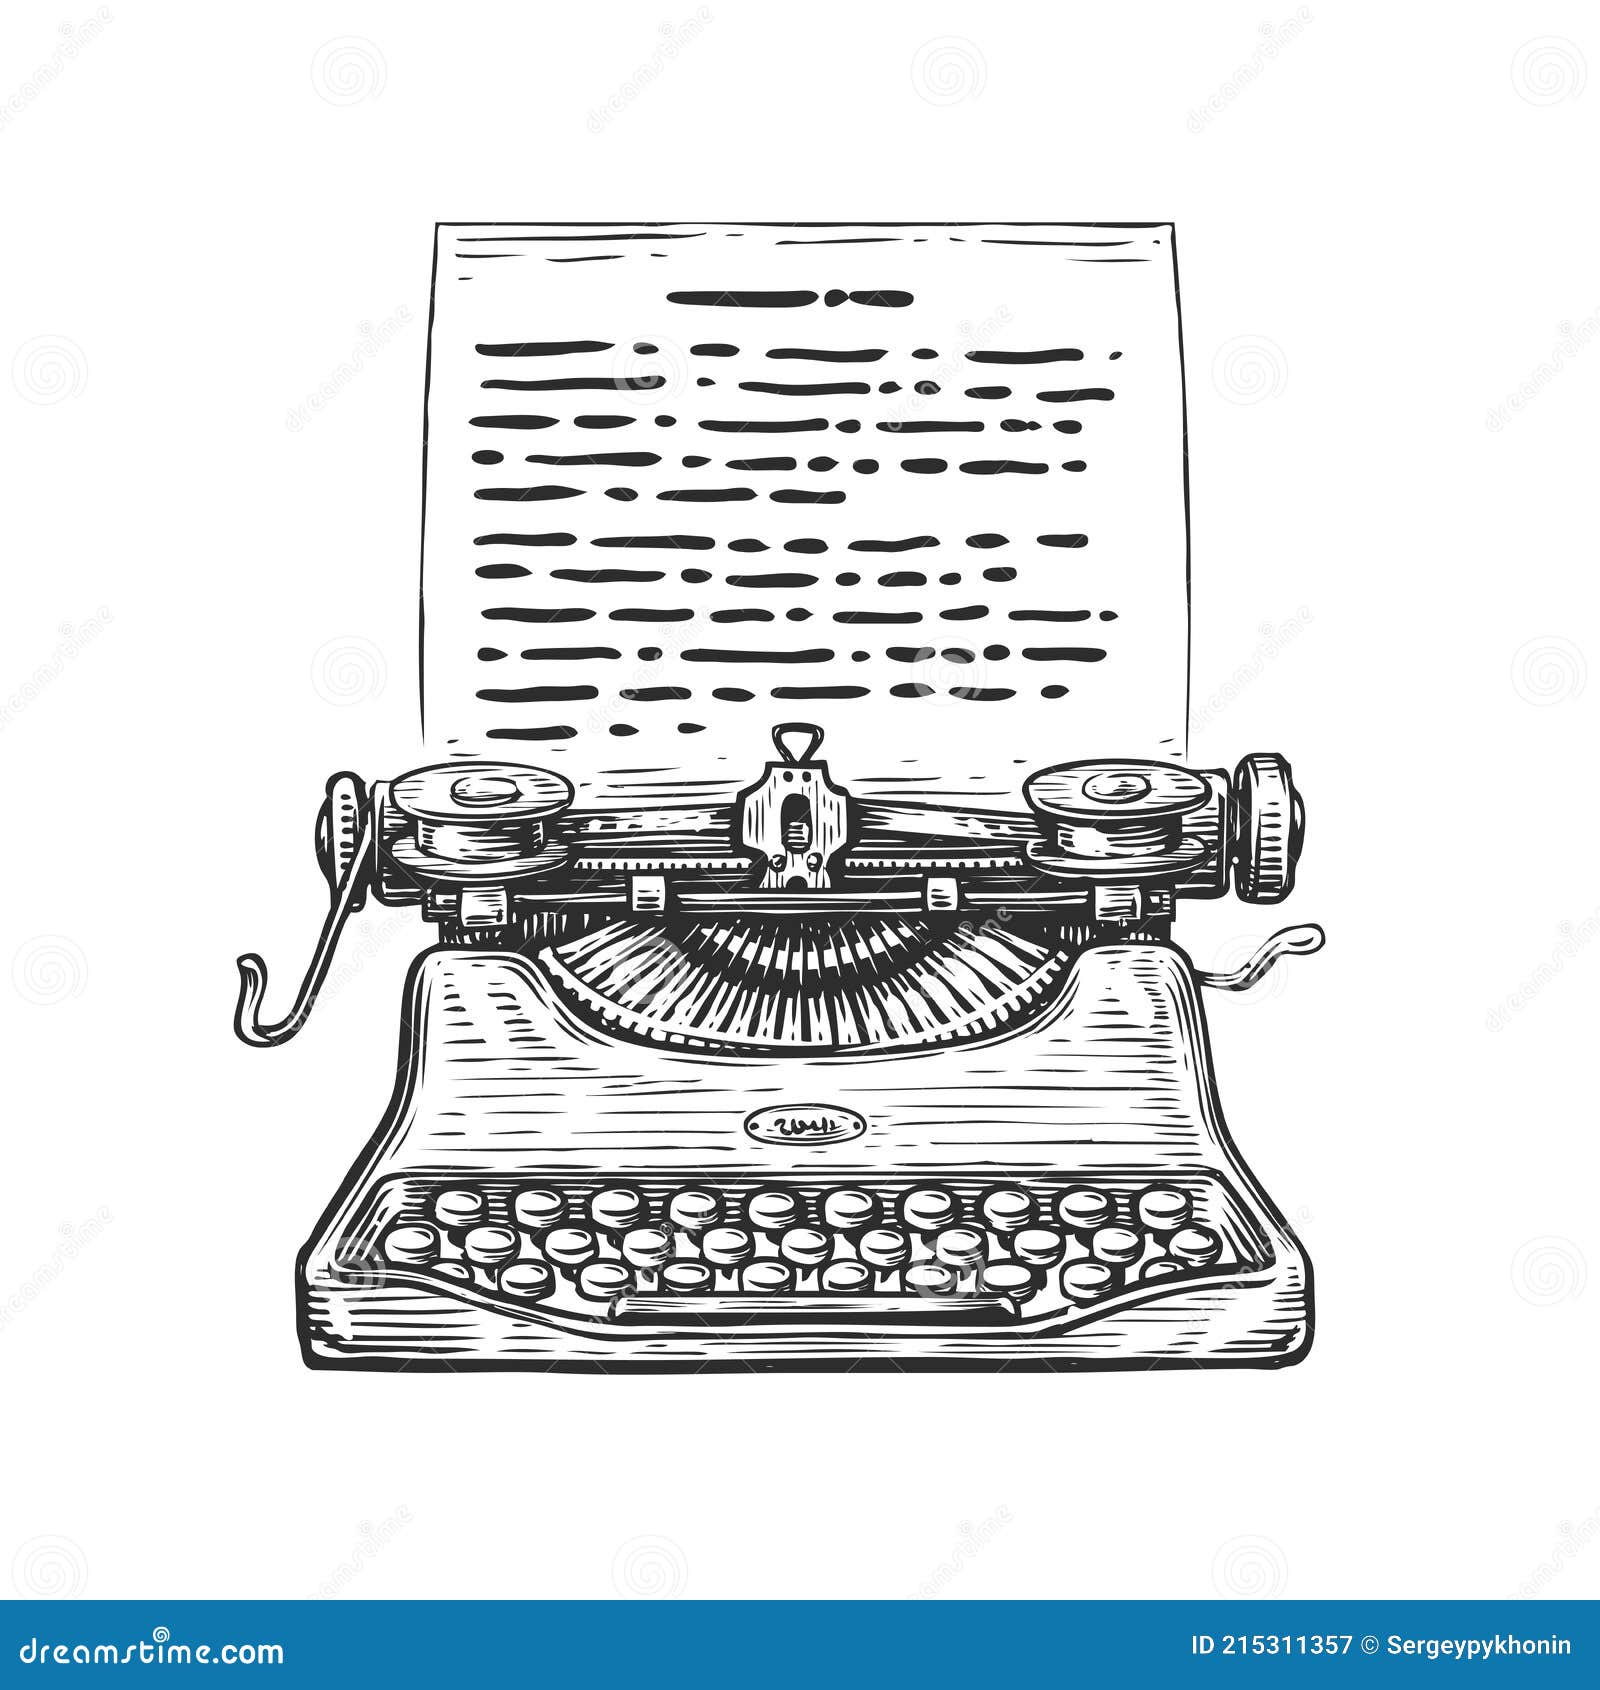 Máquina de escribir vintage boceto de máquina de escribir dibujado a mano  en estilo de grabado ilustración vectorial